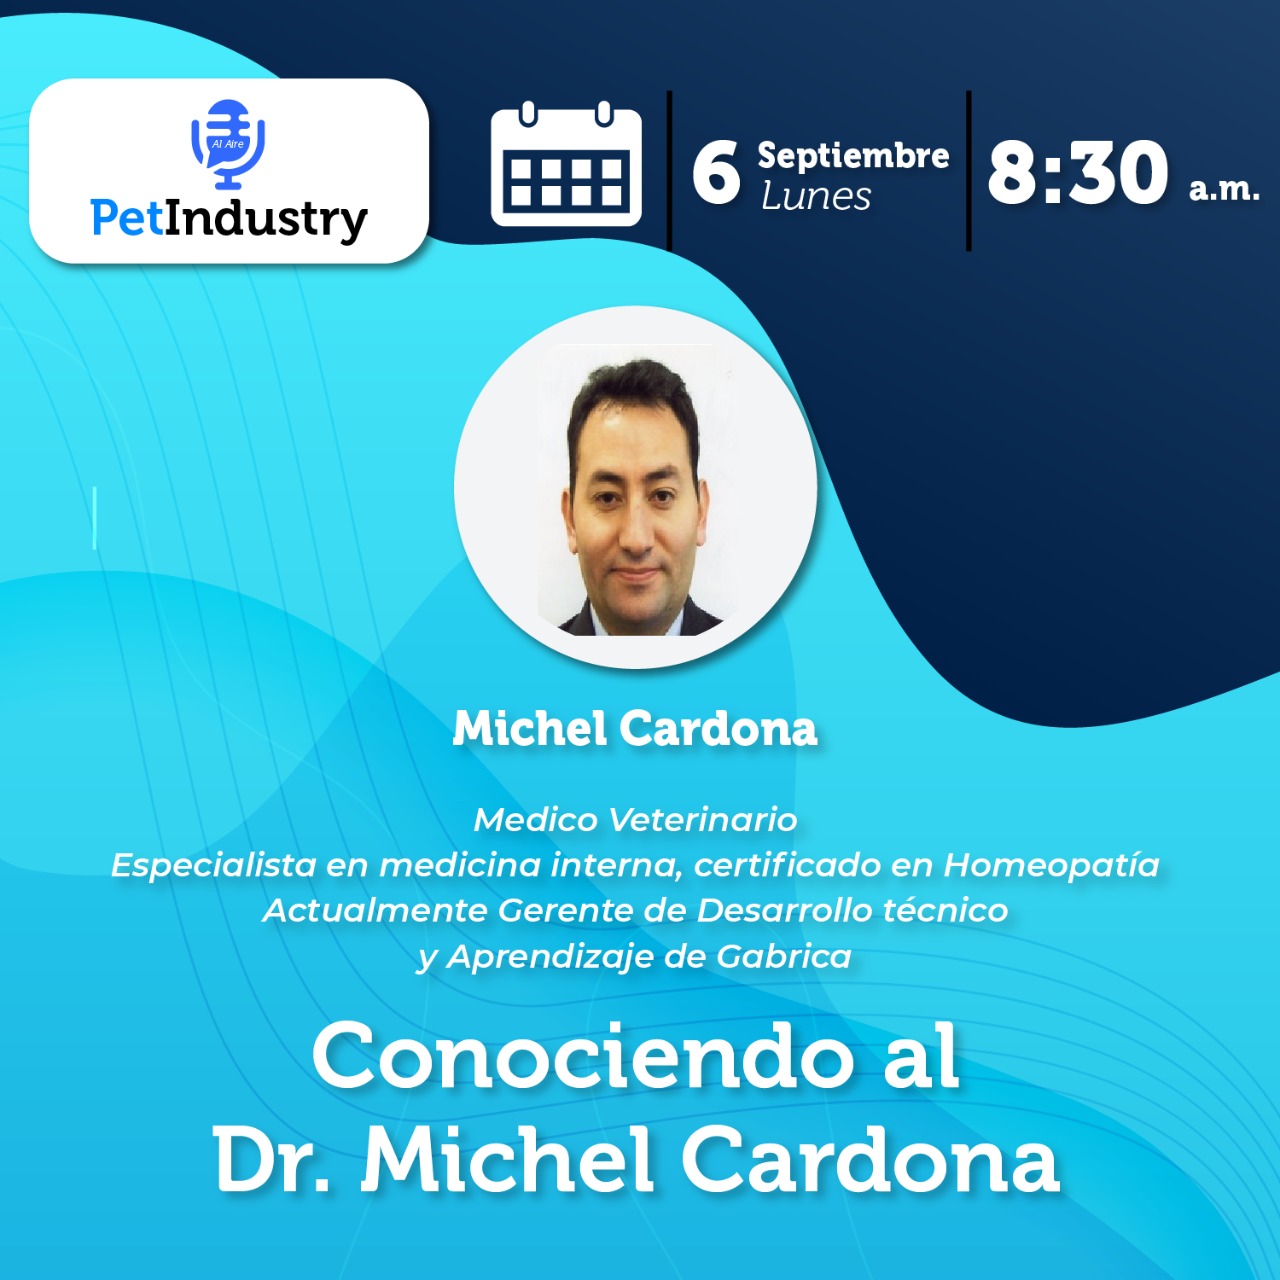  Conociendo al Dr. Michel Cardona